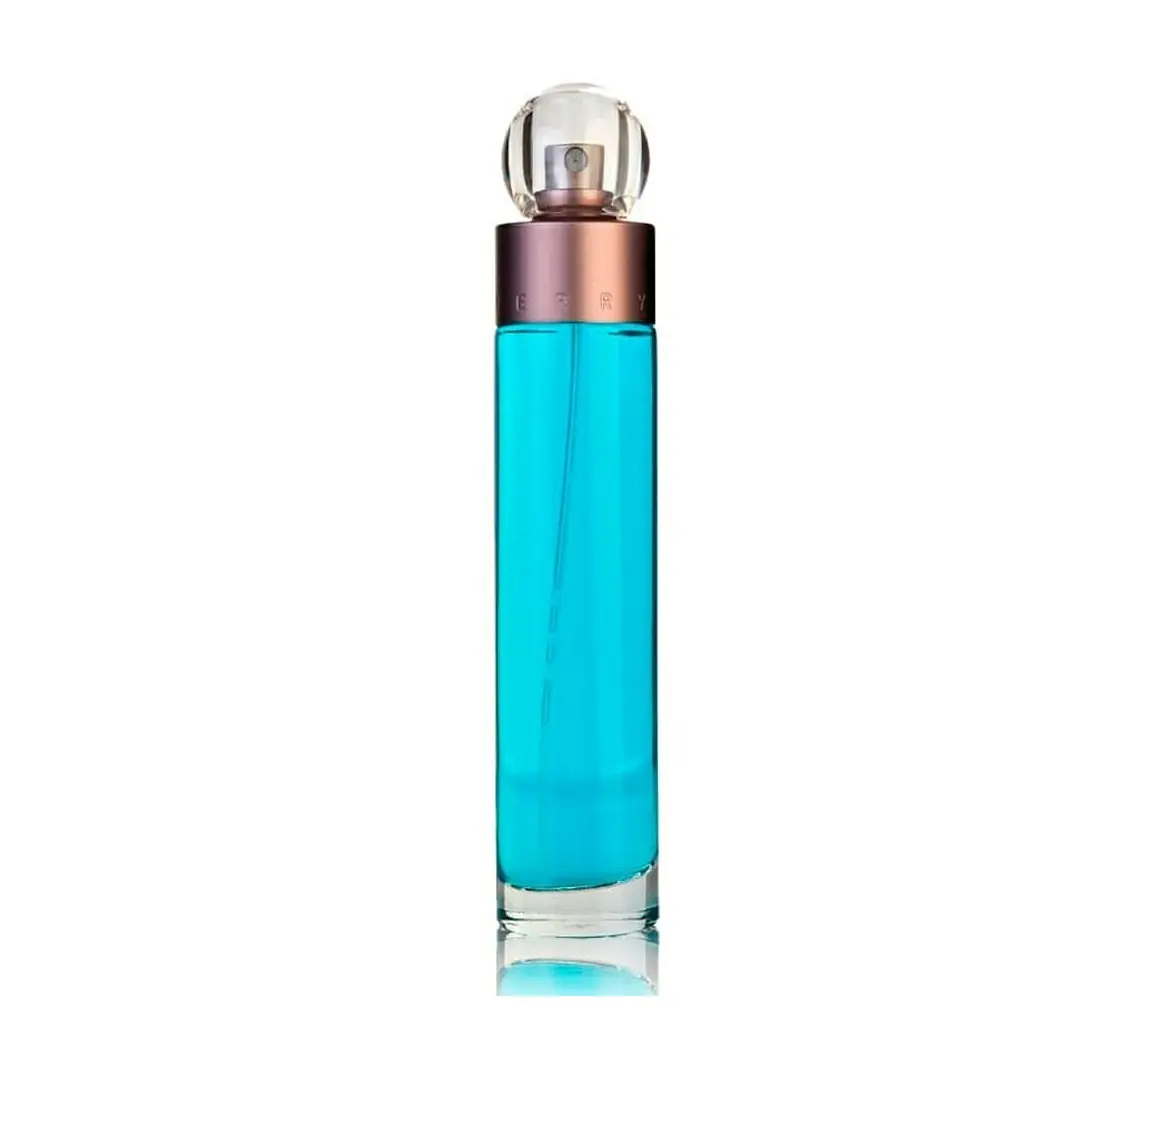 Perfume perry ellis 360 para hombres: fragancia duradera y sofisticada ...